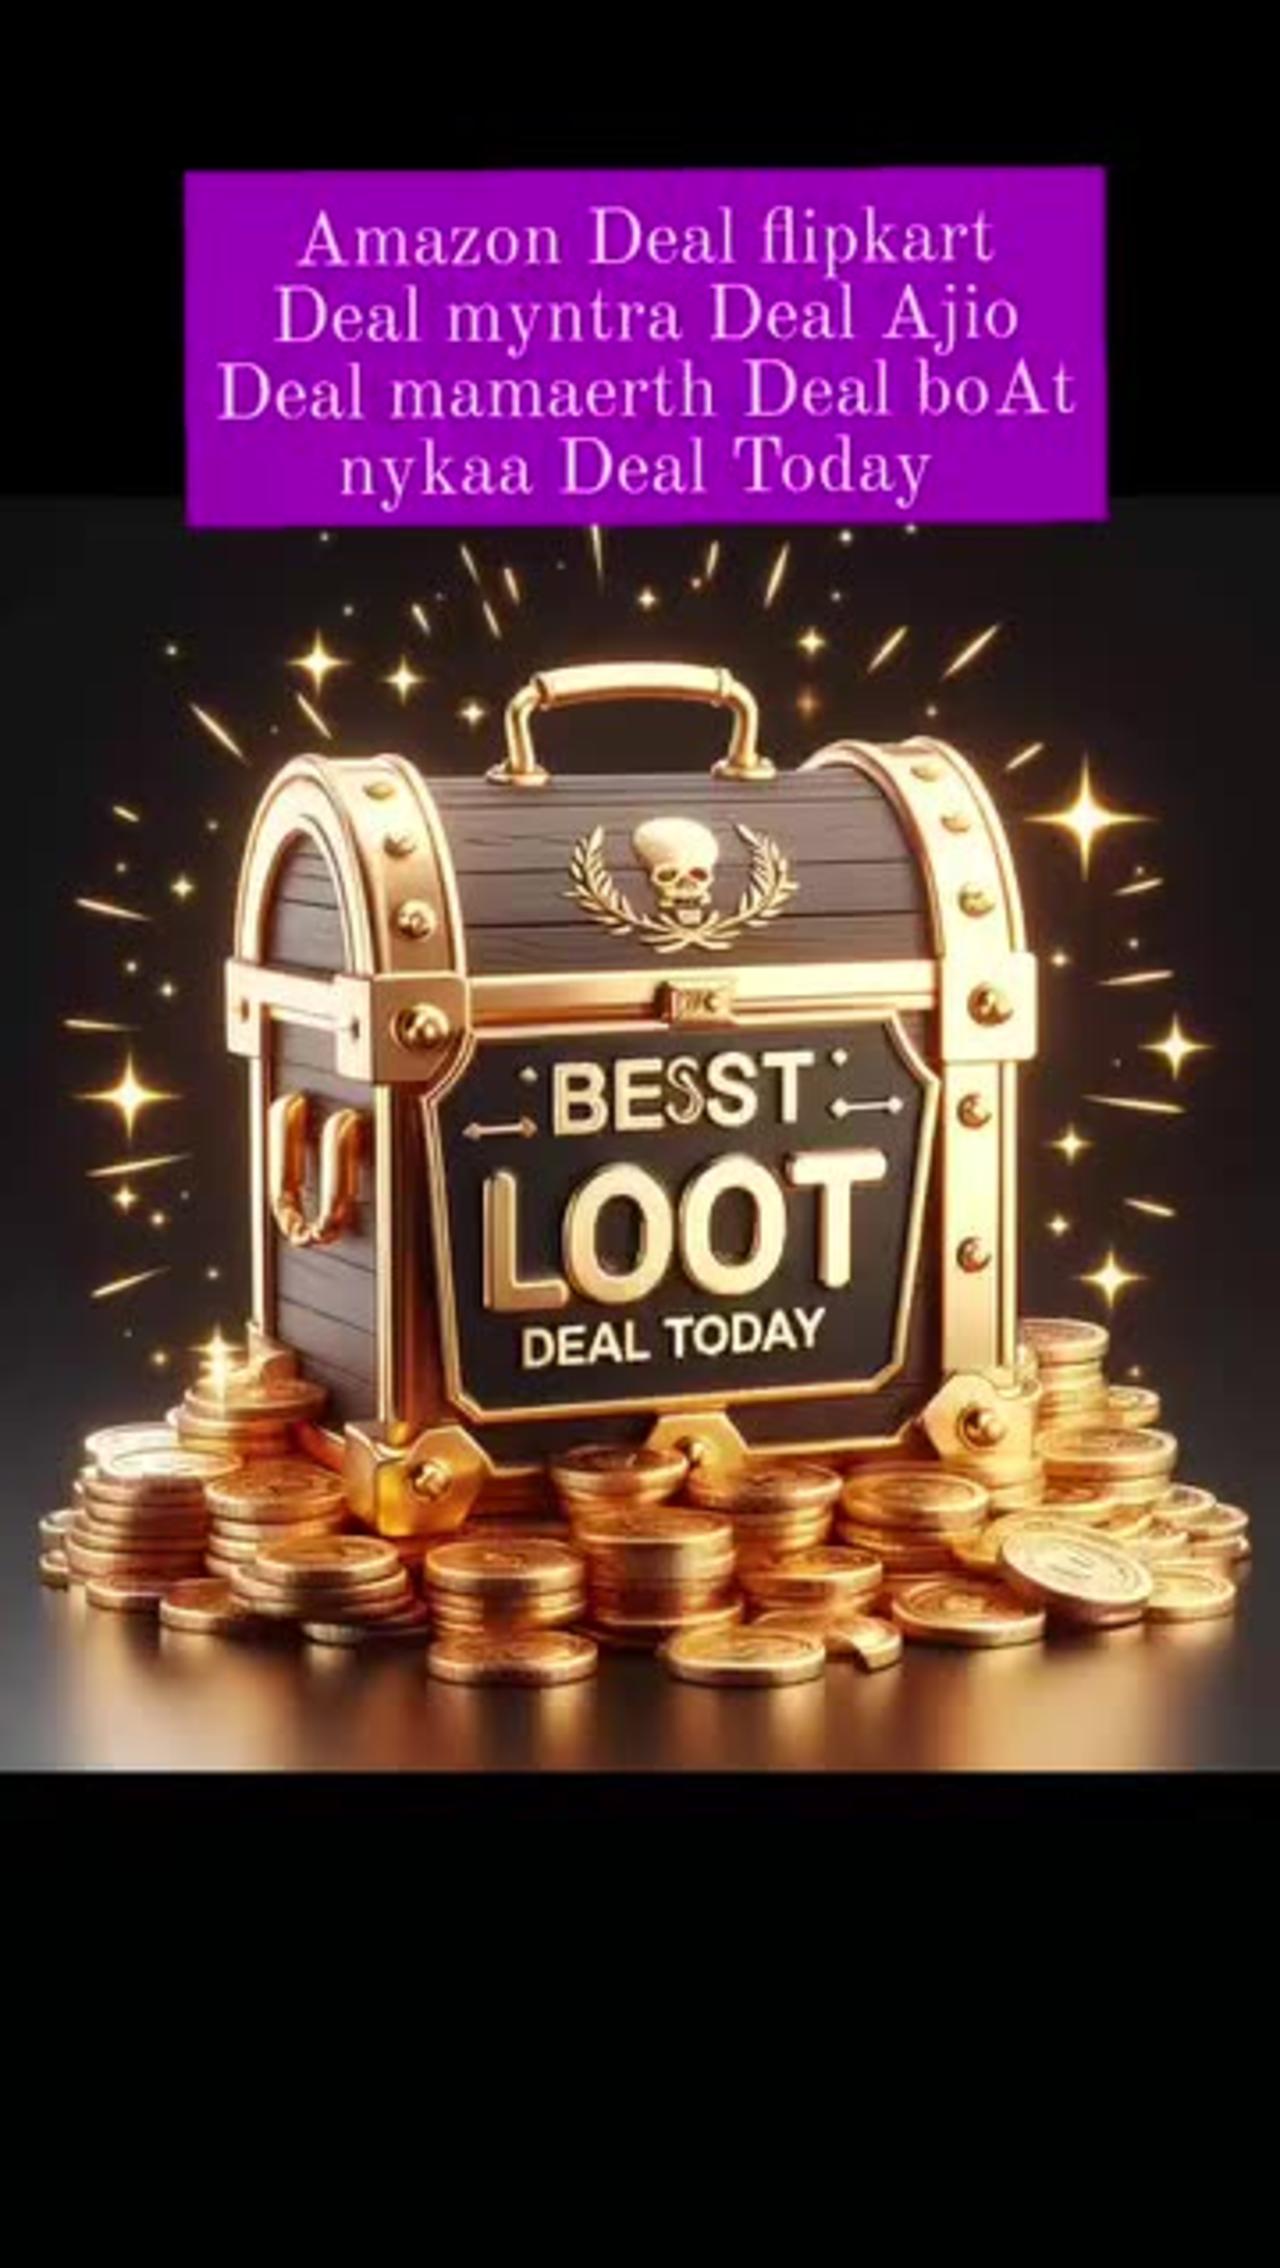 Best LooT Deal Today Amazon Deal flipkart Deal myntra Deal Ajio Deal mamaerth Deal